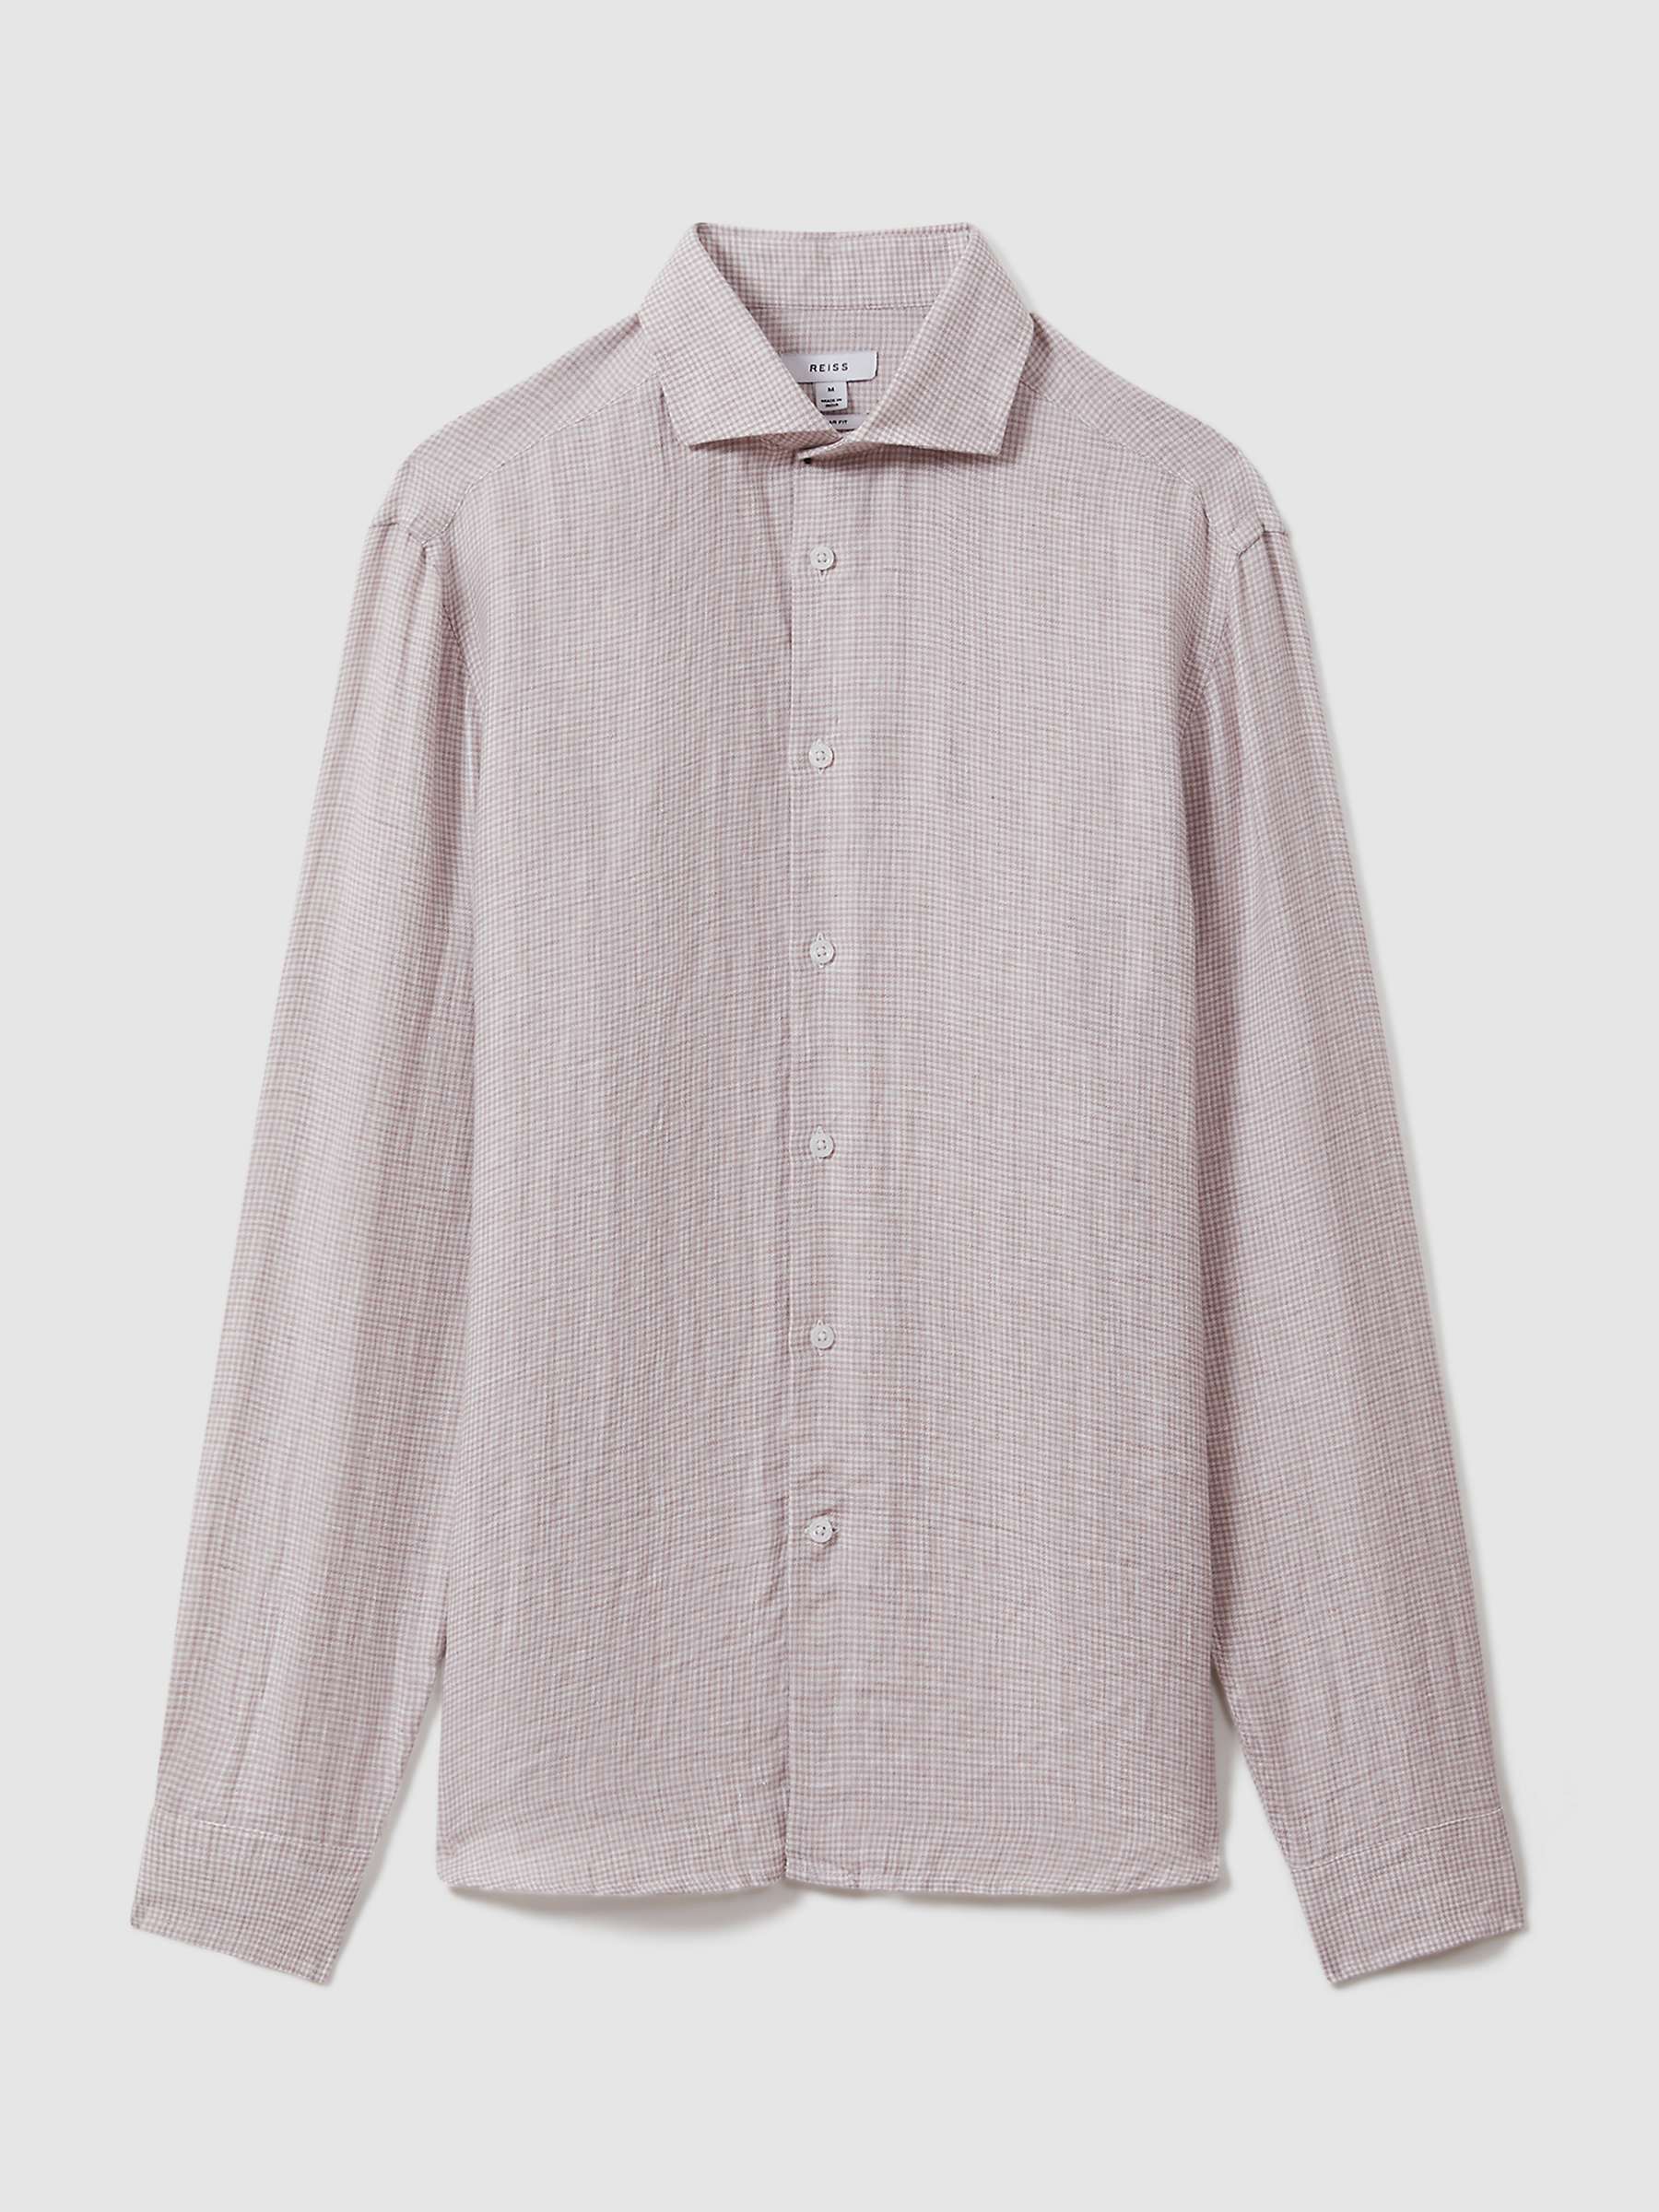 Buy Reiss Ruban Puppytooth Long Sleeve Linen Shirt Online at johnlewis.com